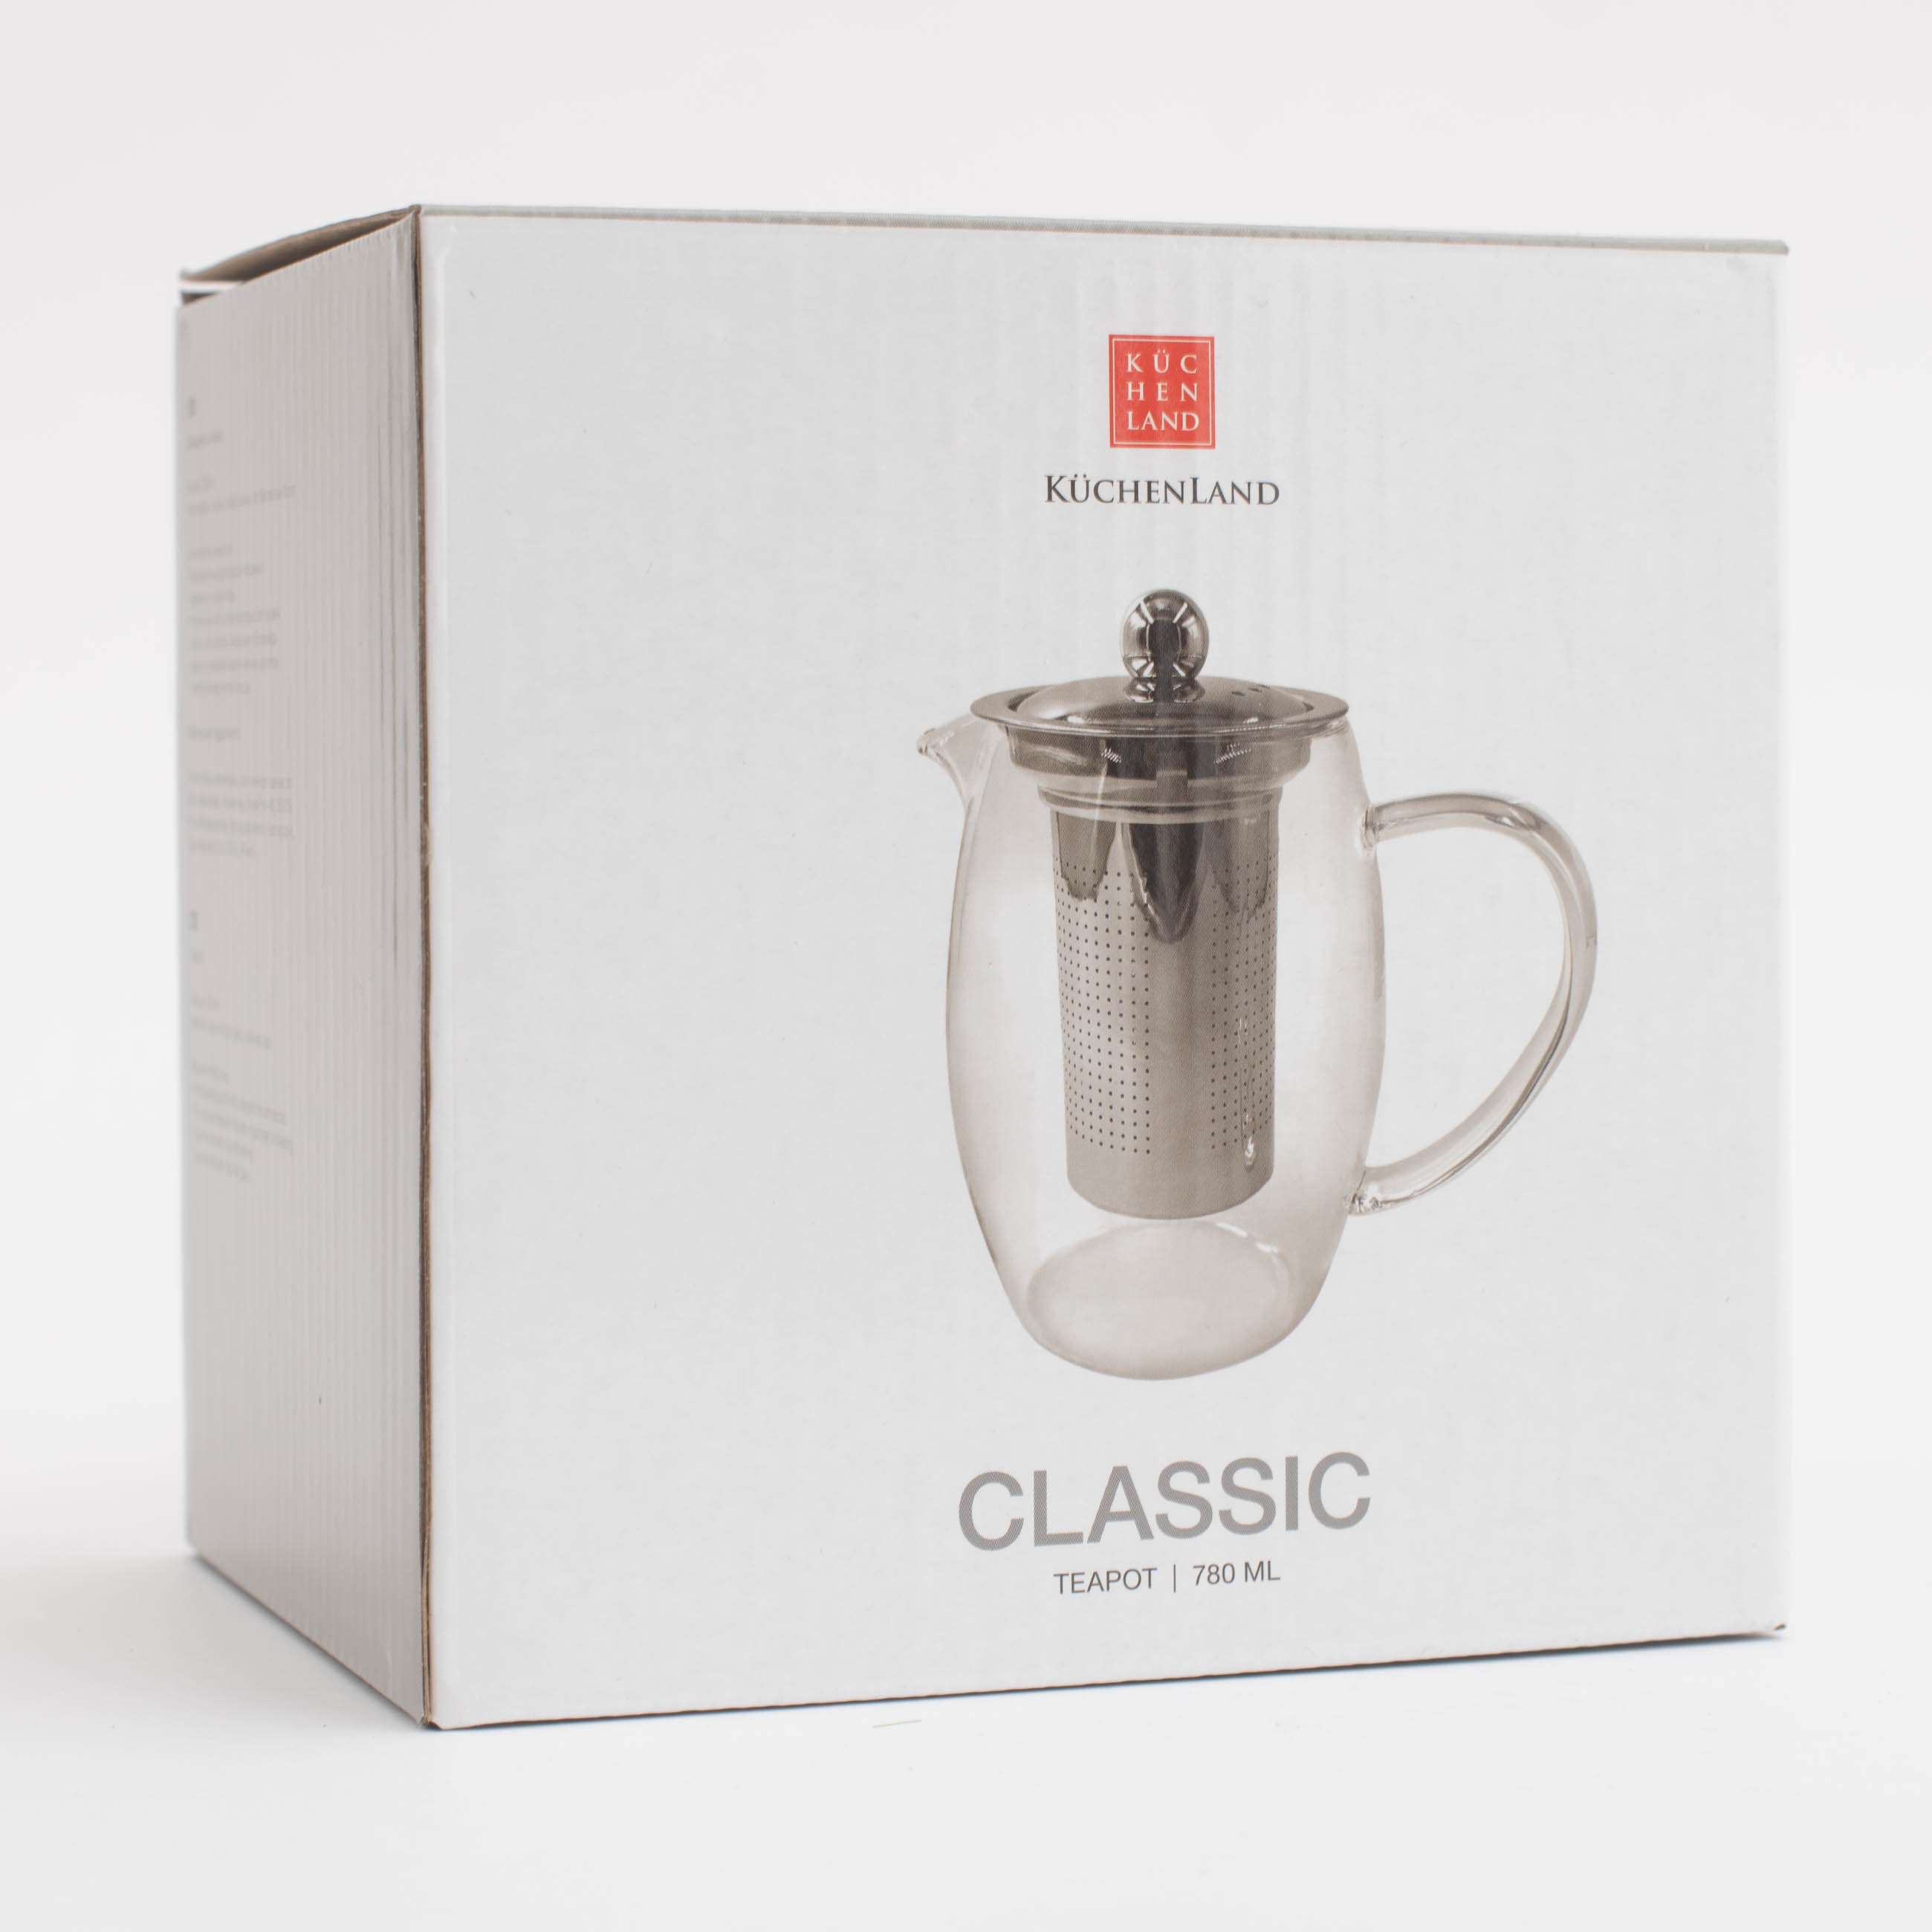 Teapot, 780 ml, used glass, Classic изображение № 6